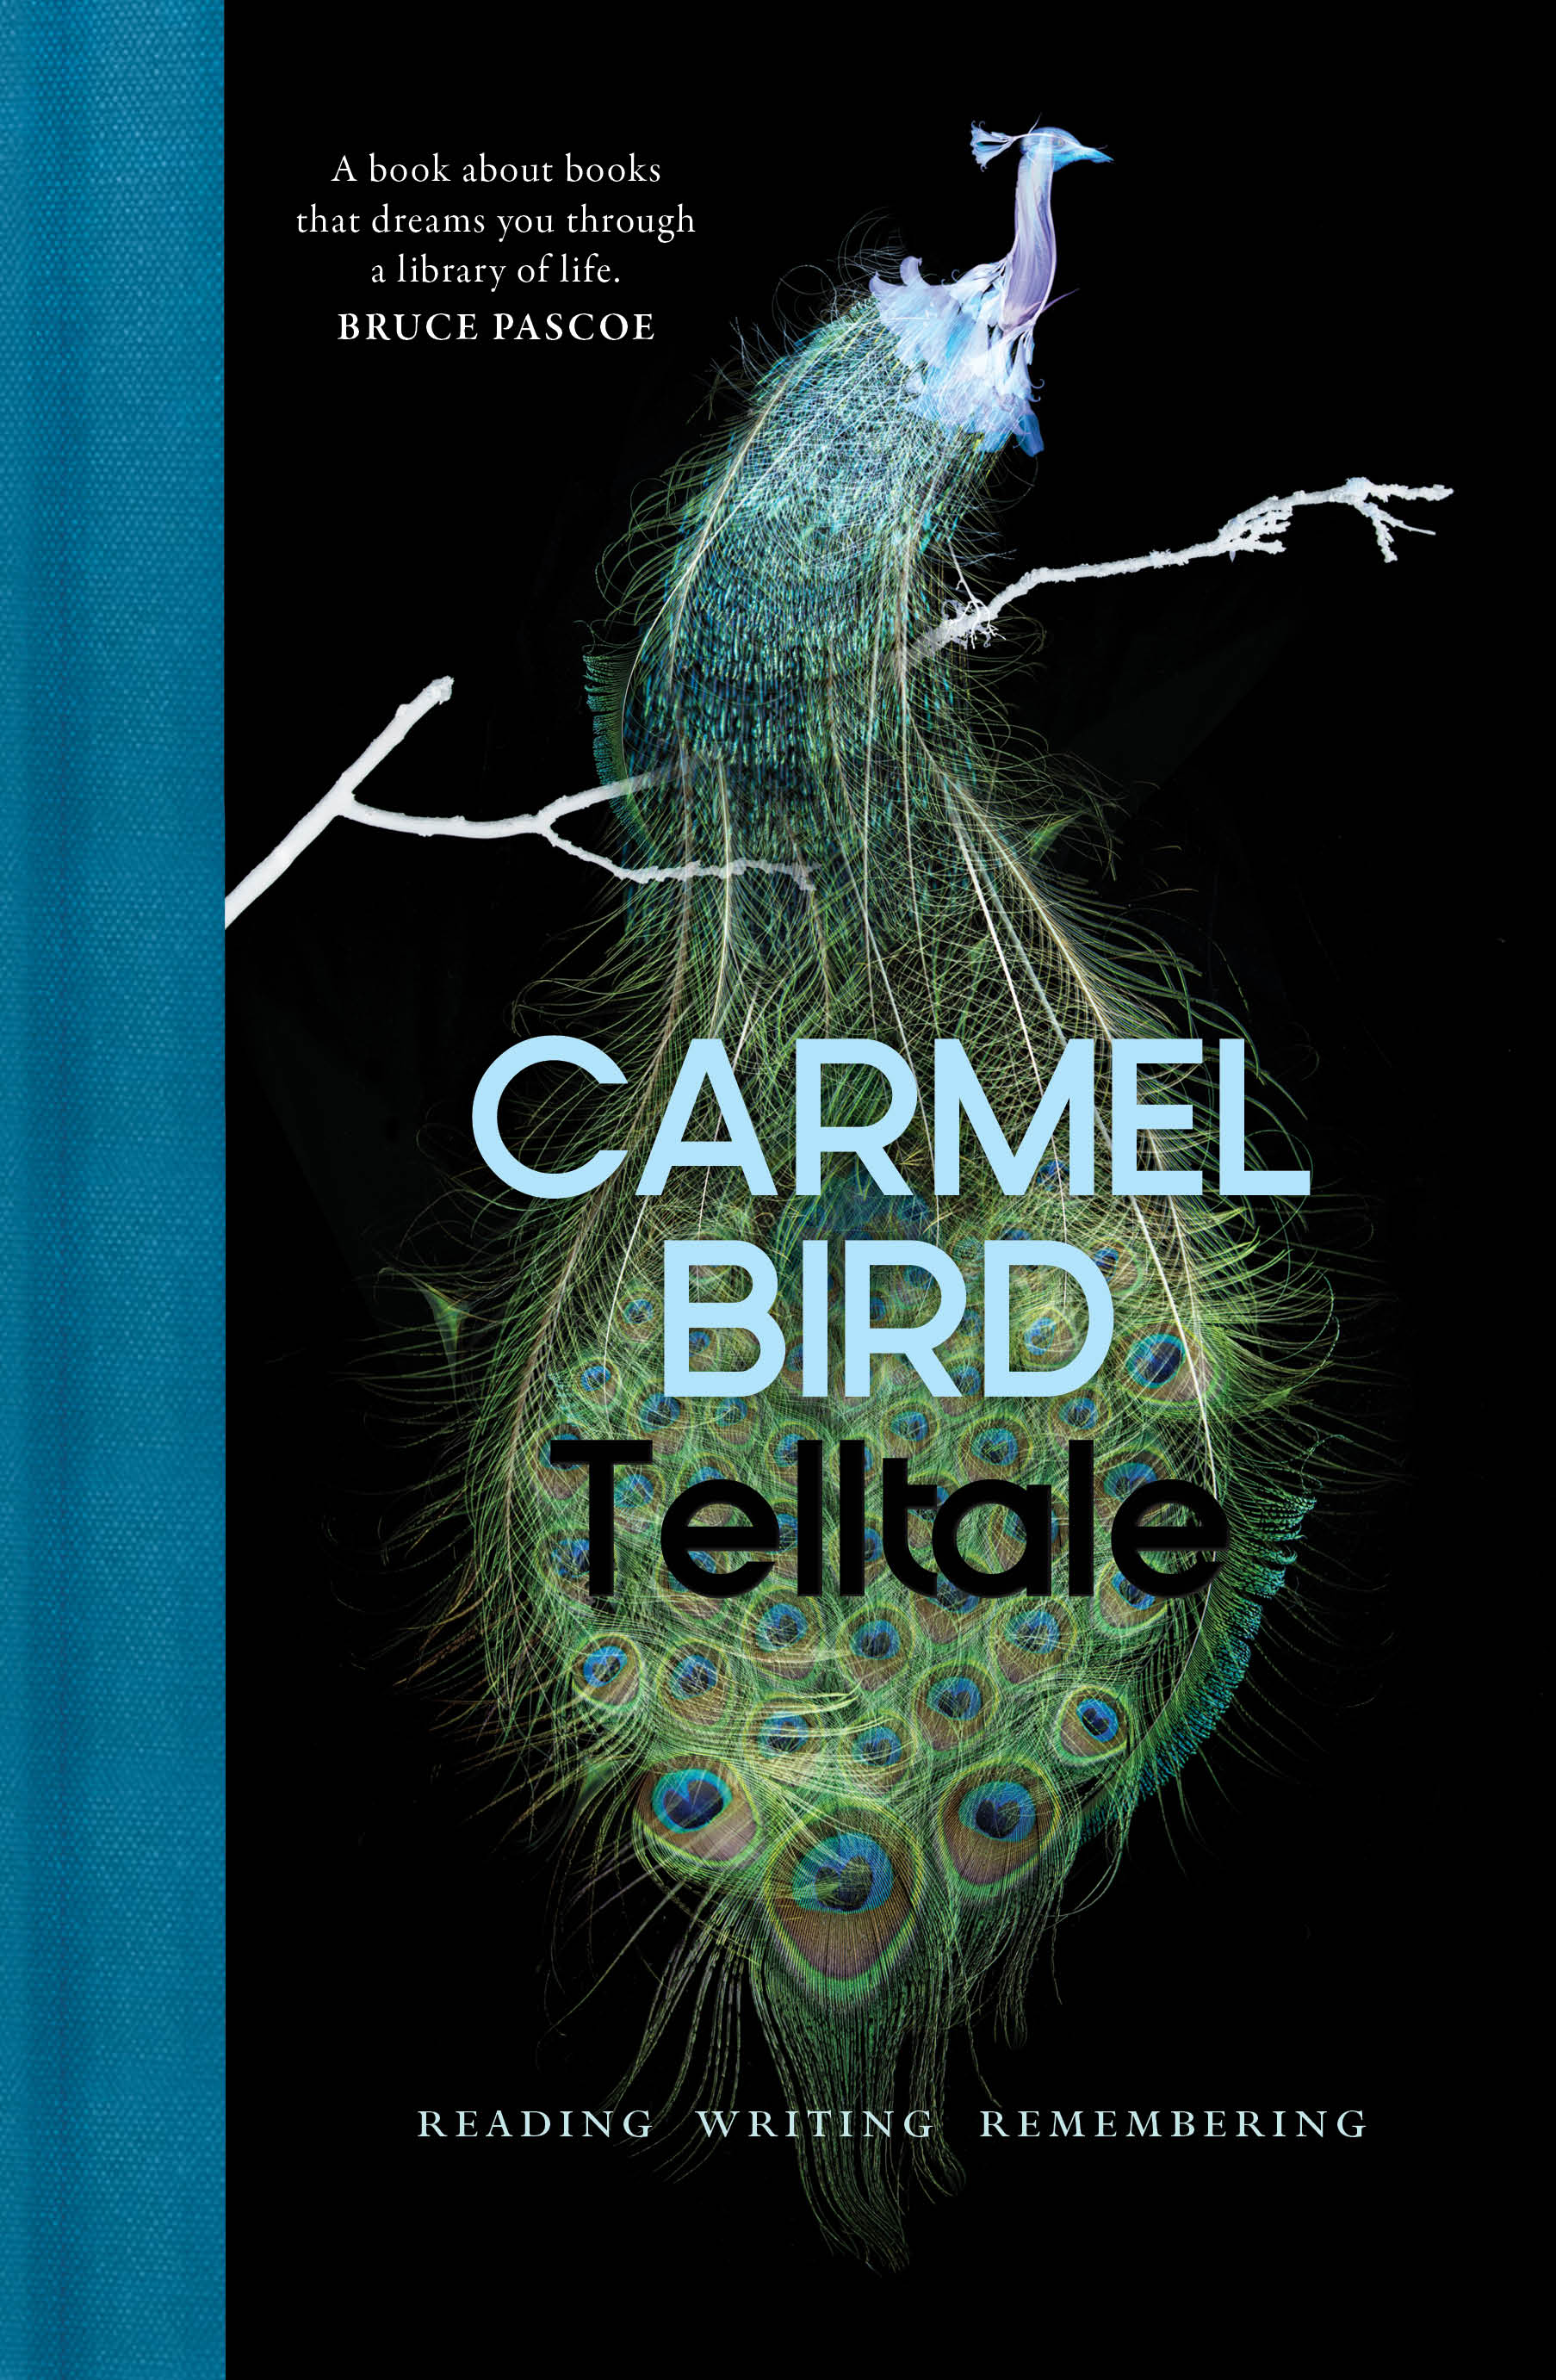 Launch of Telltale by Carmel Bird